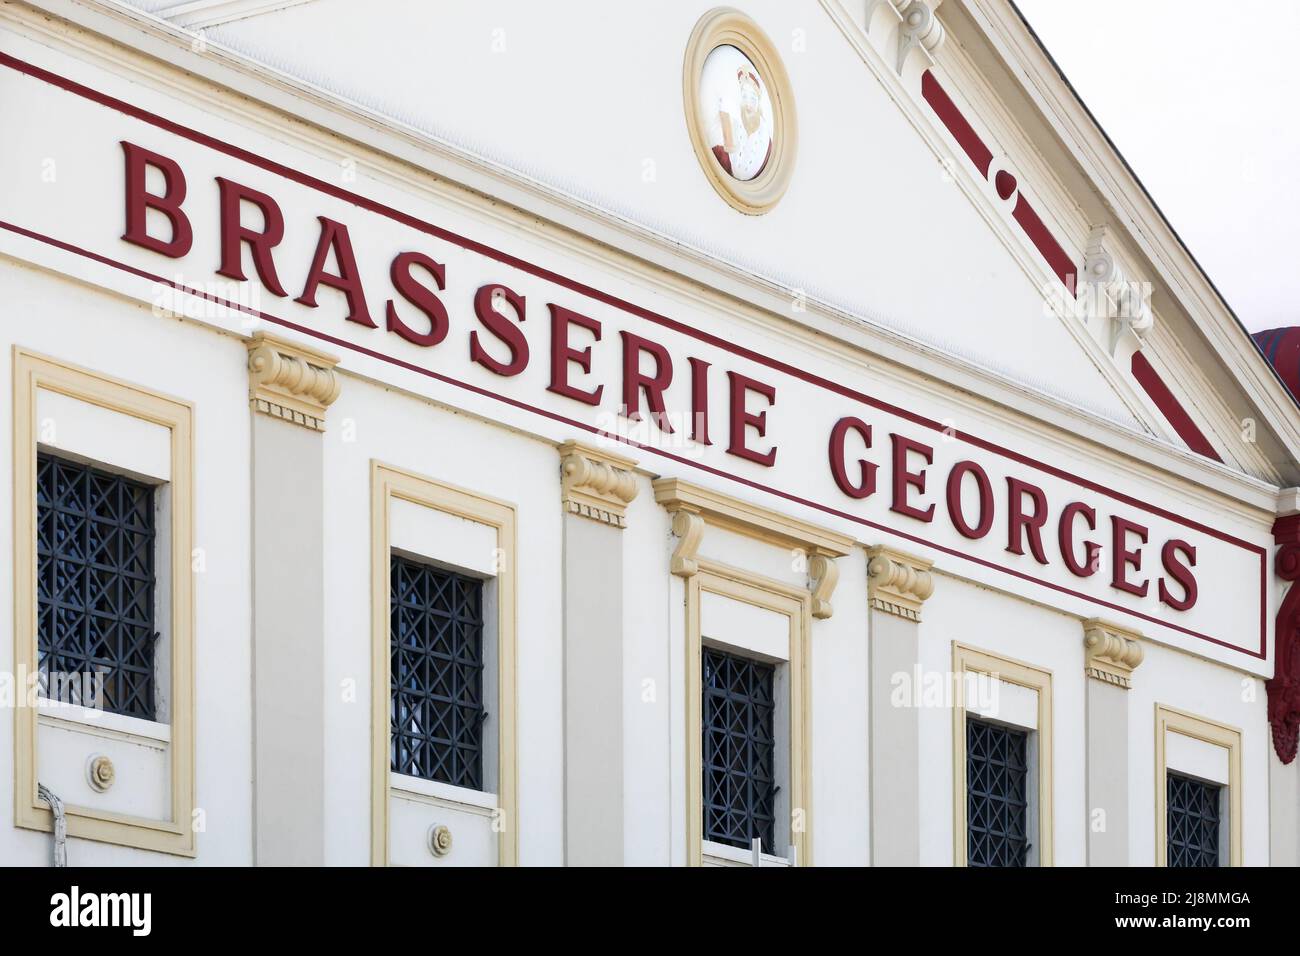 Lione, Francia - 21 maggio 2020: Facciata della famosa Brasserie Georges a Lione. E' la brasserie piu' antica della citta' e una delle piu' grandi brasserie Foto Stock